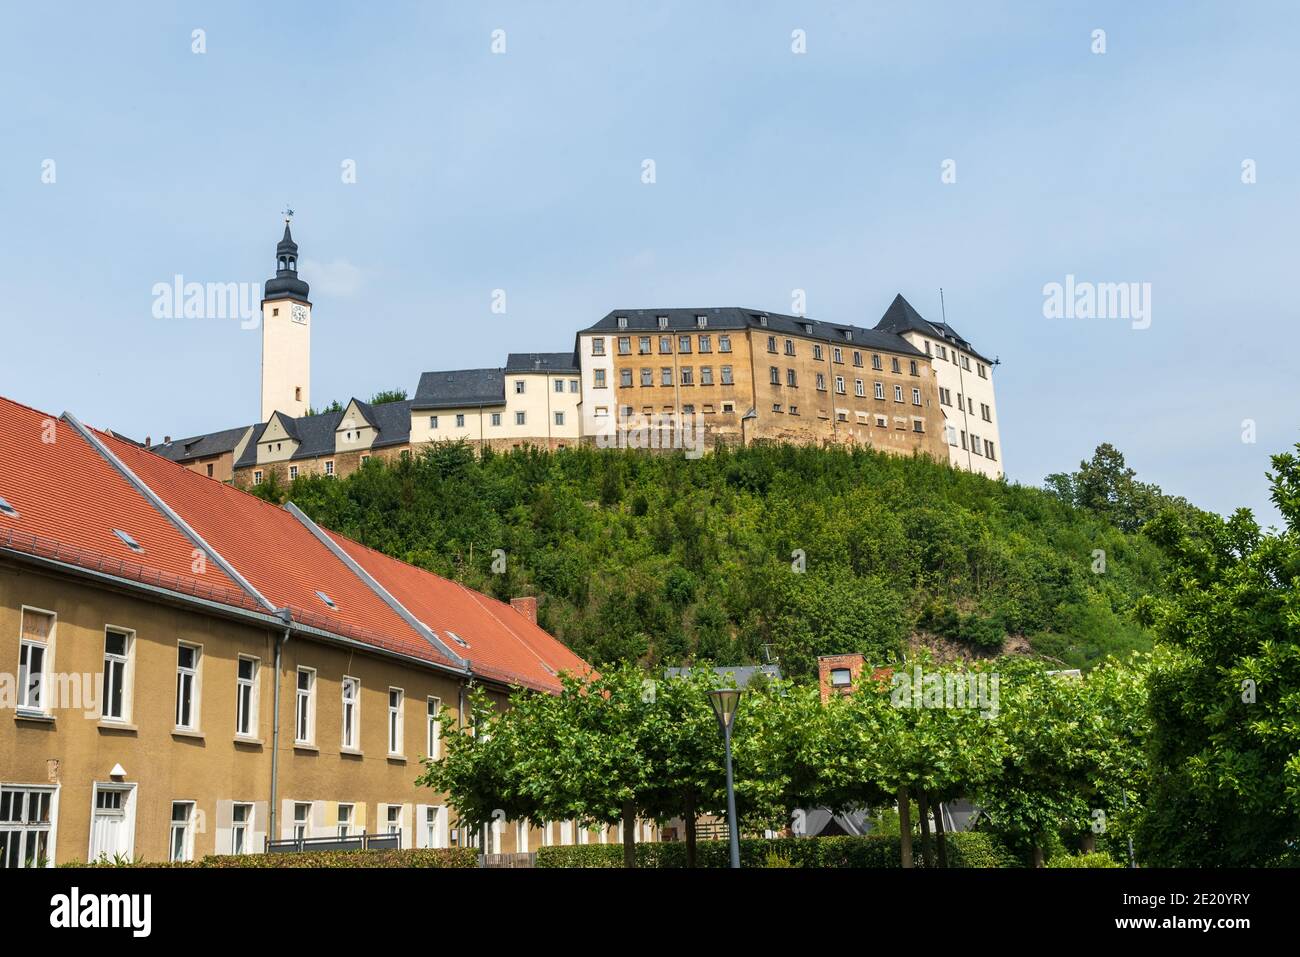 Oberes Schloss castello nella città di Greiz a Elestertal in Germania Foto Stock